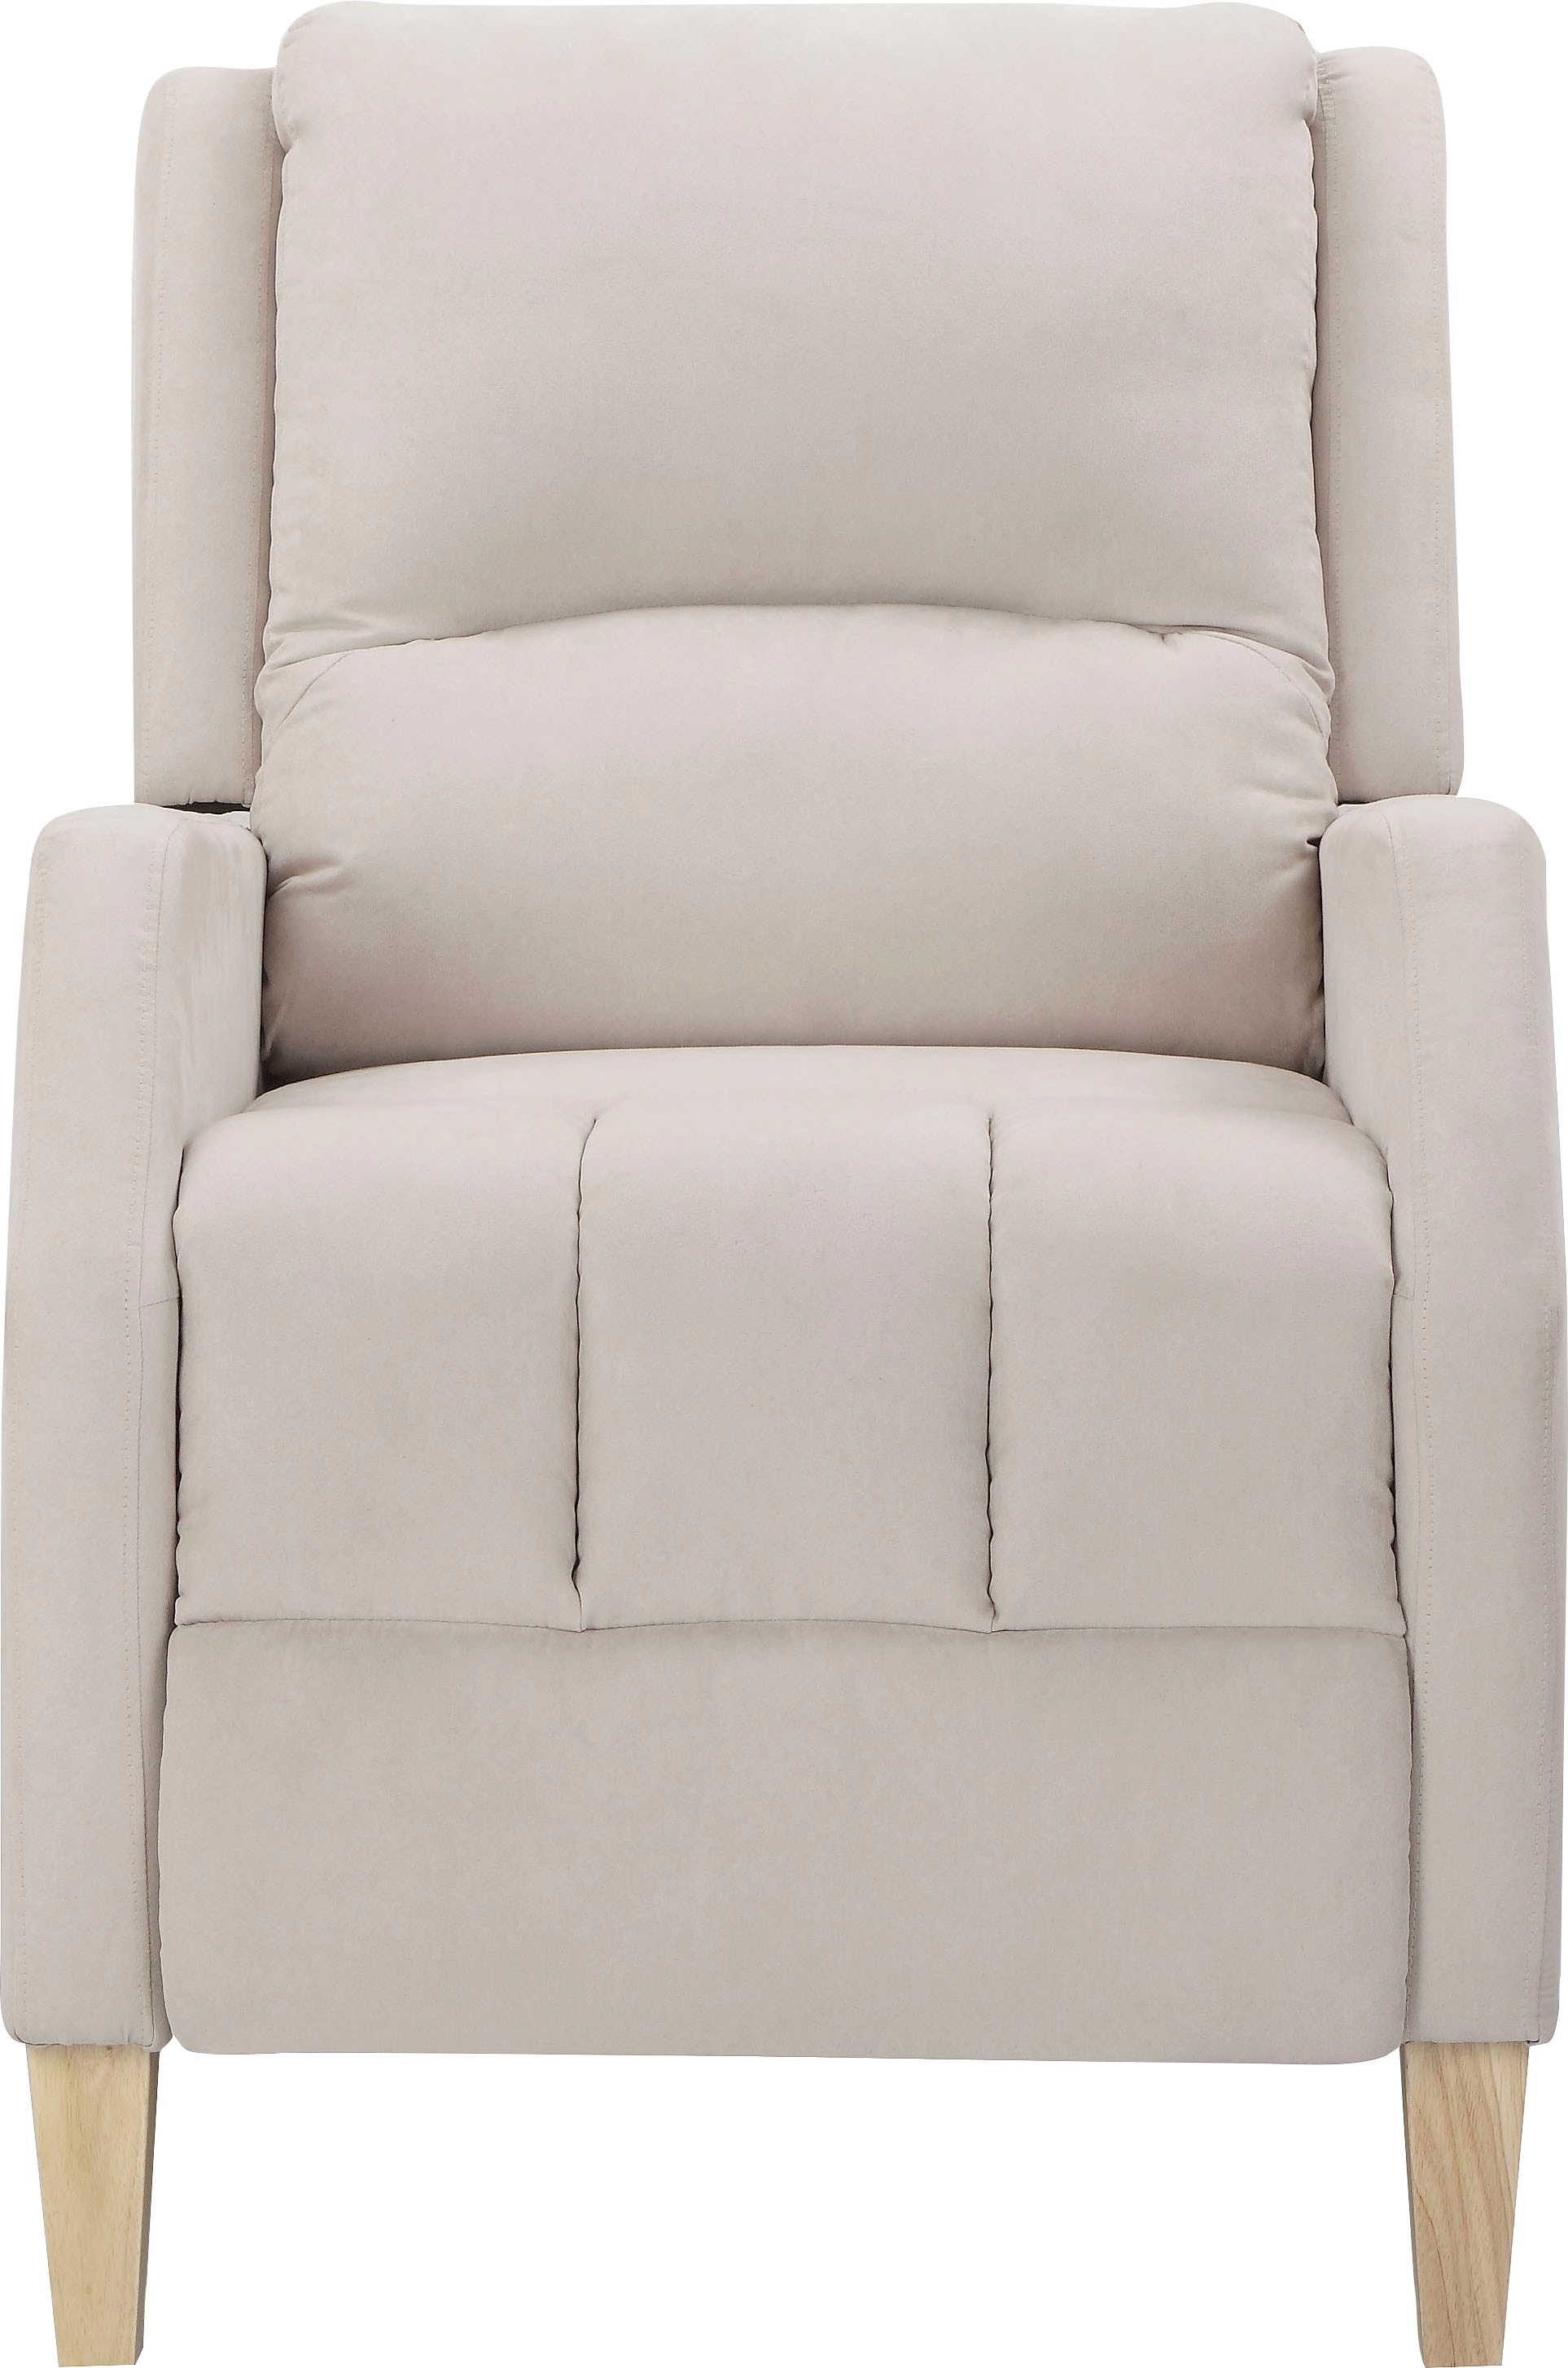 Home affaire Relaxsessel »Tholey«, (1 St.), Relaxsessel mit Verstellung,  Sitz und Rücken gepolstert, Sitzhöhe 51cm bei OTTO | Funktionssessel